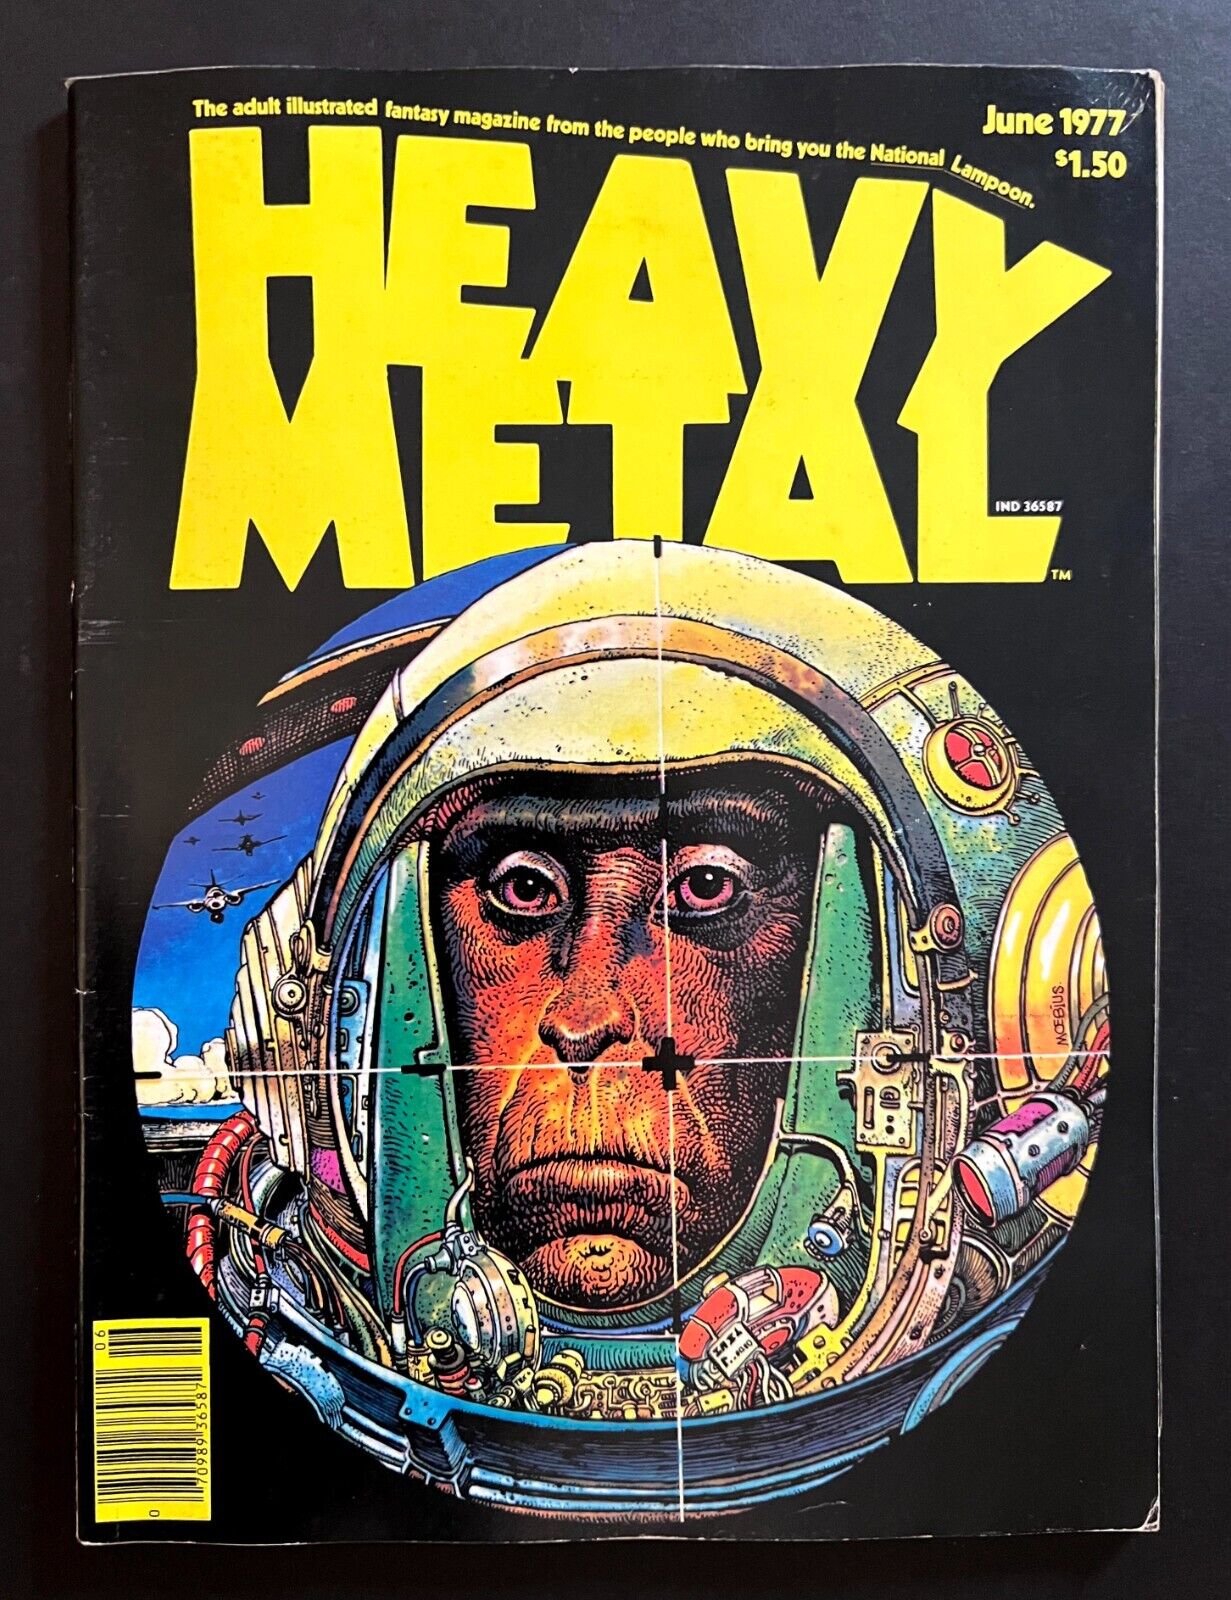 HEAVY METAL MAGAZINE #3 June 1977 Moebius Cover, Corben, Bode, Druillet